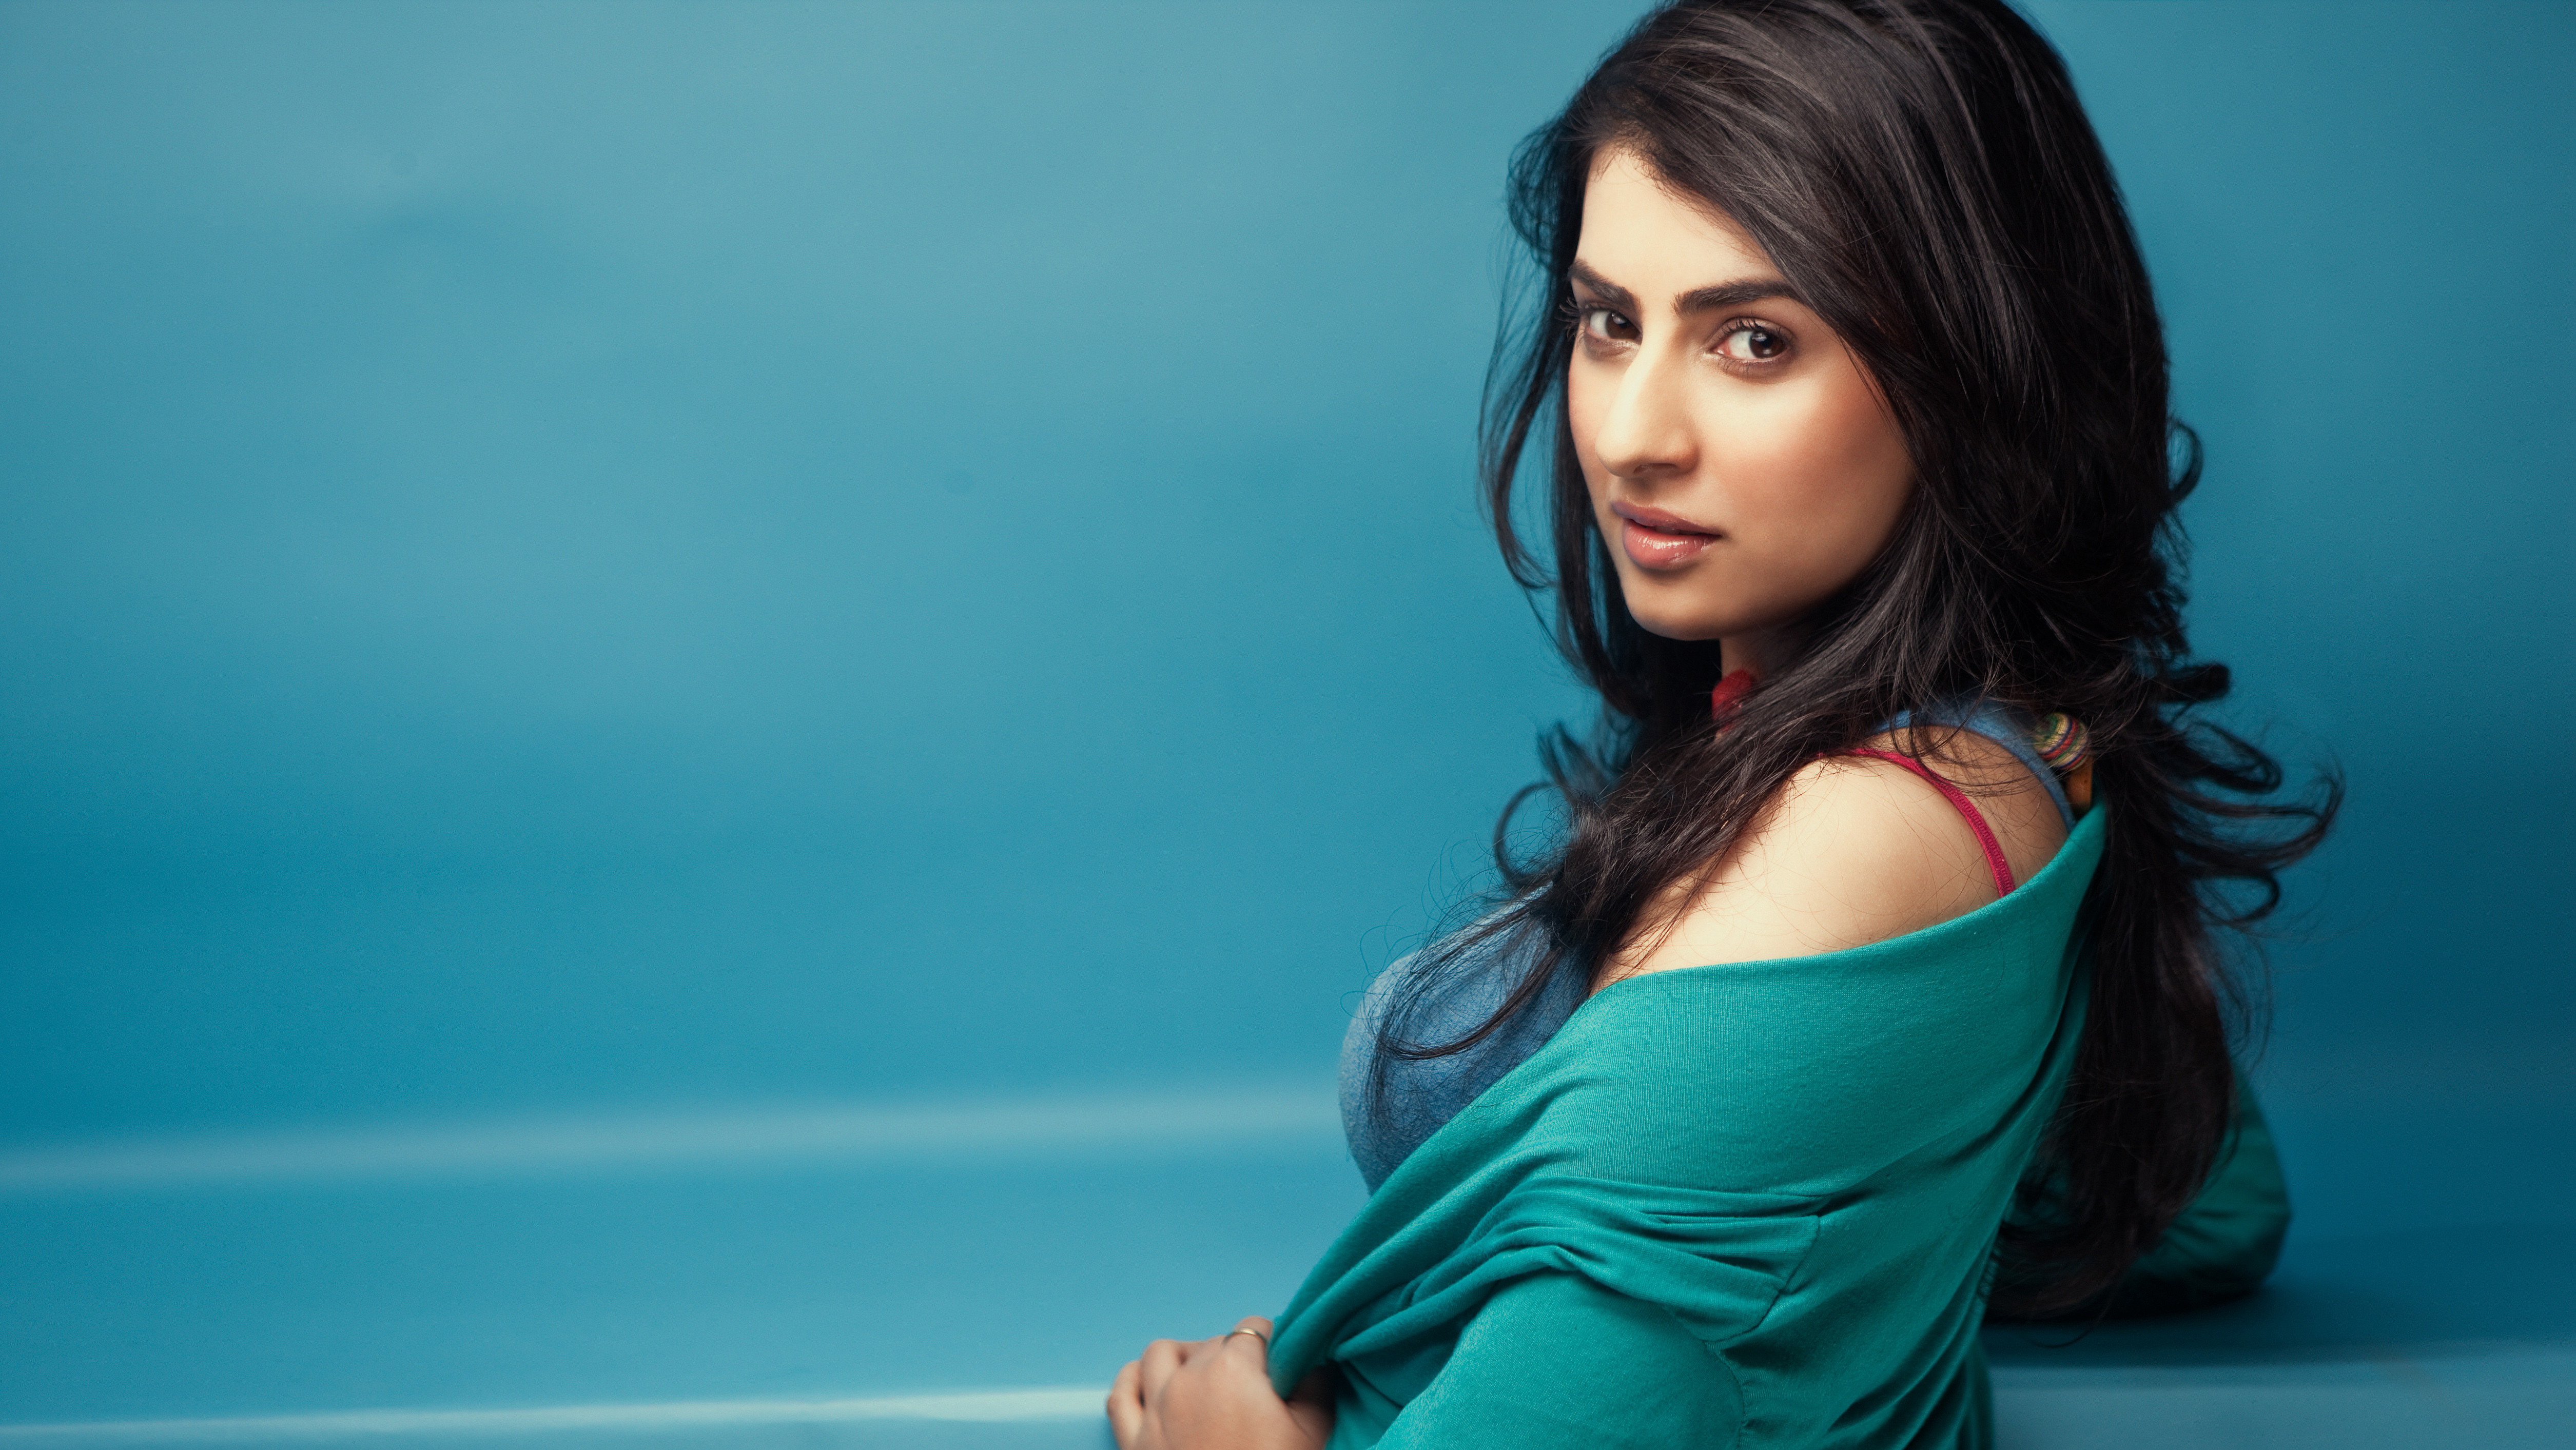 tamilische schauspielerin 4k wallpaper,haar,gesicht,blau,schönheit,frisur